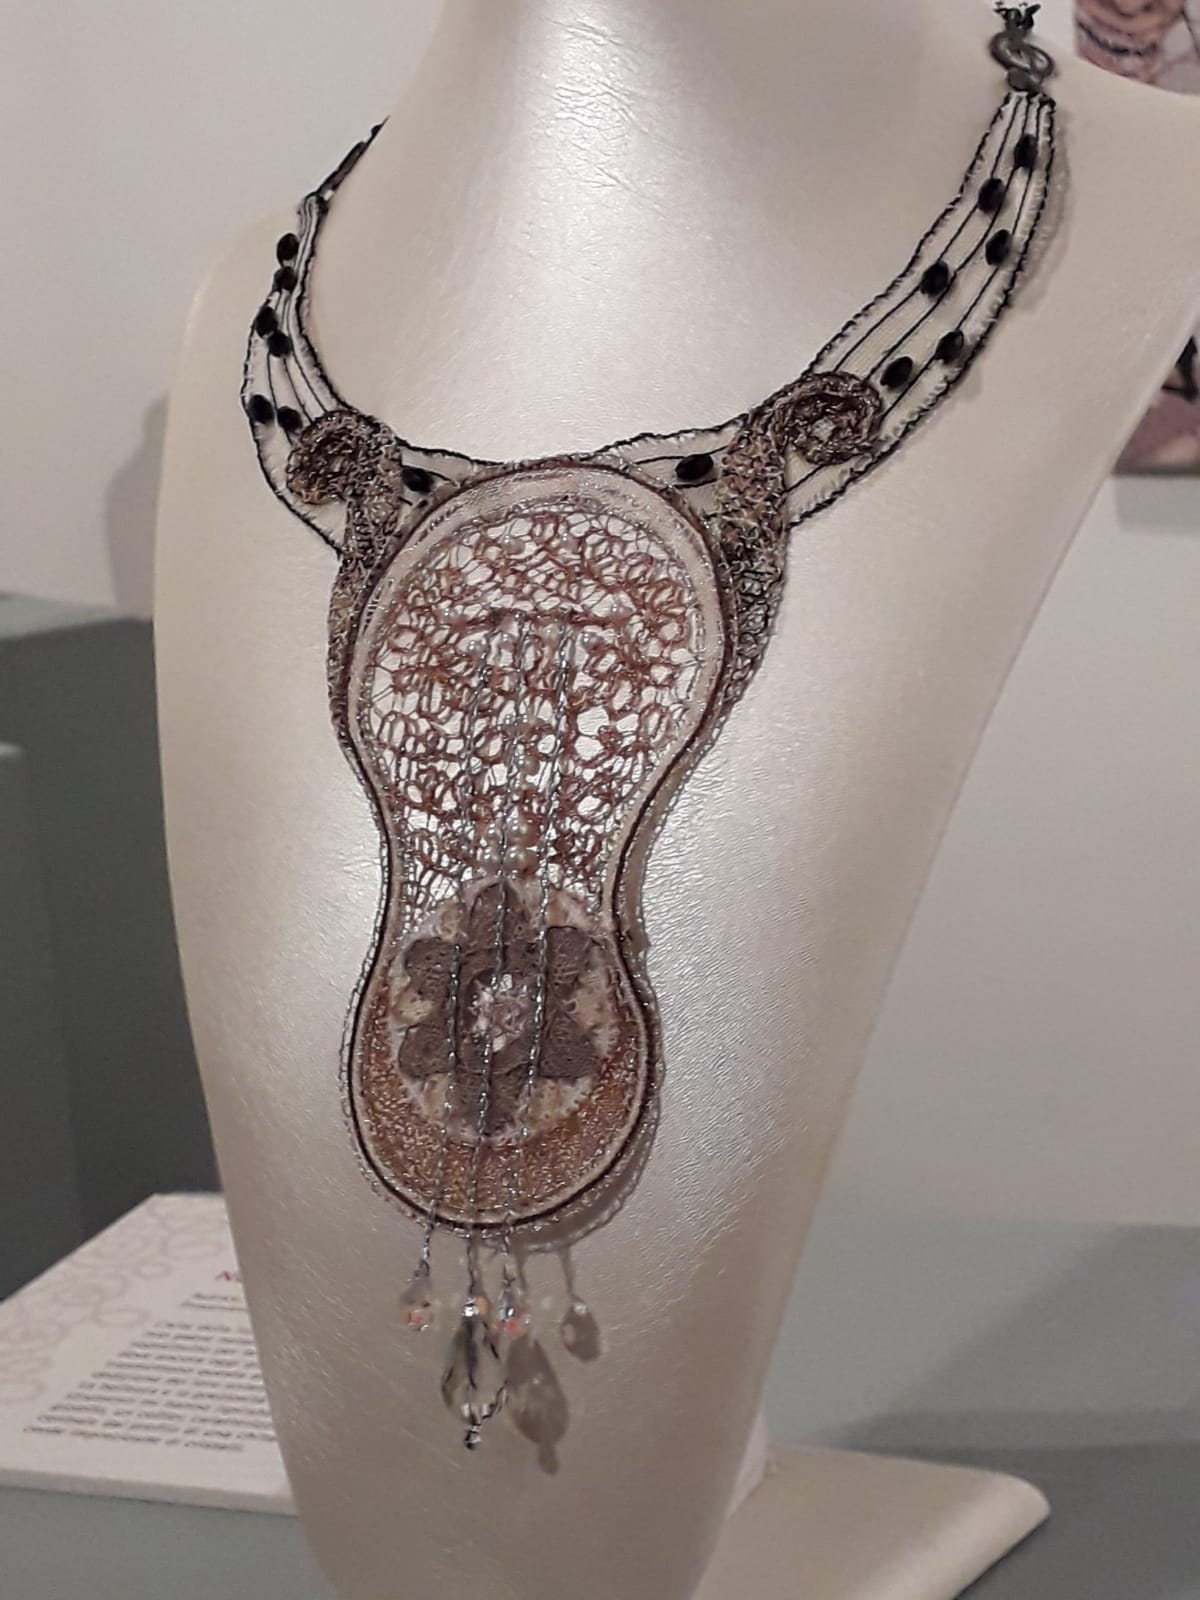 BISIGNANO: L'arte della liuteria riportata su merletto: premiata a Gorizia la signora Maria Grazia Misciasci